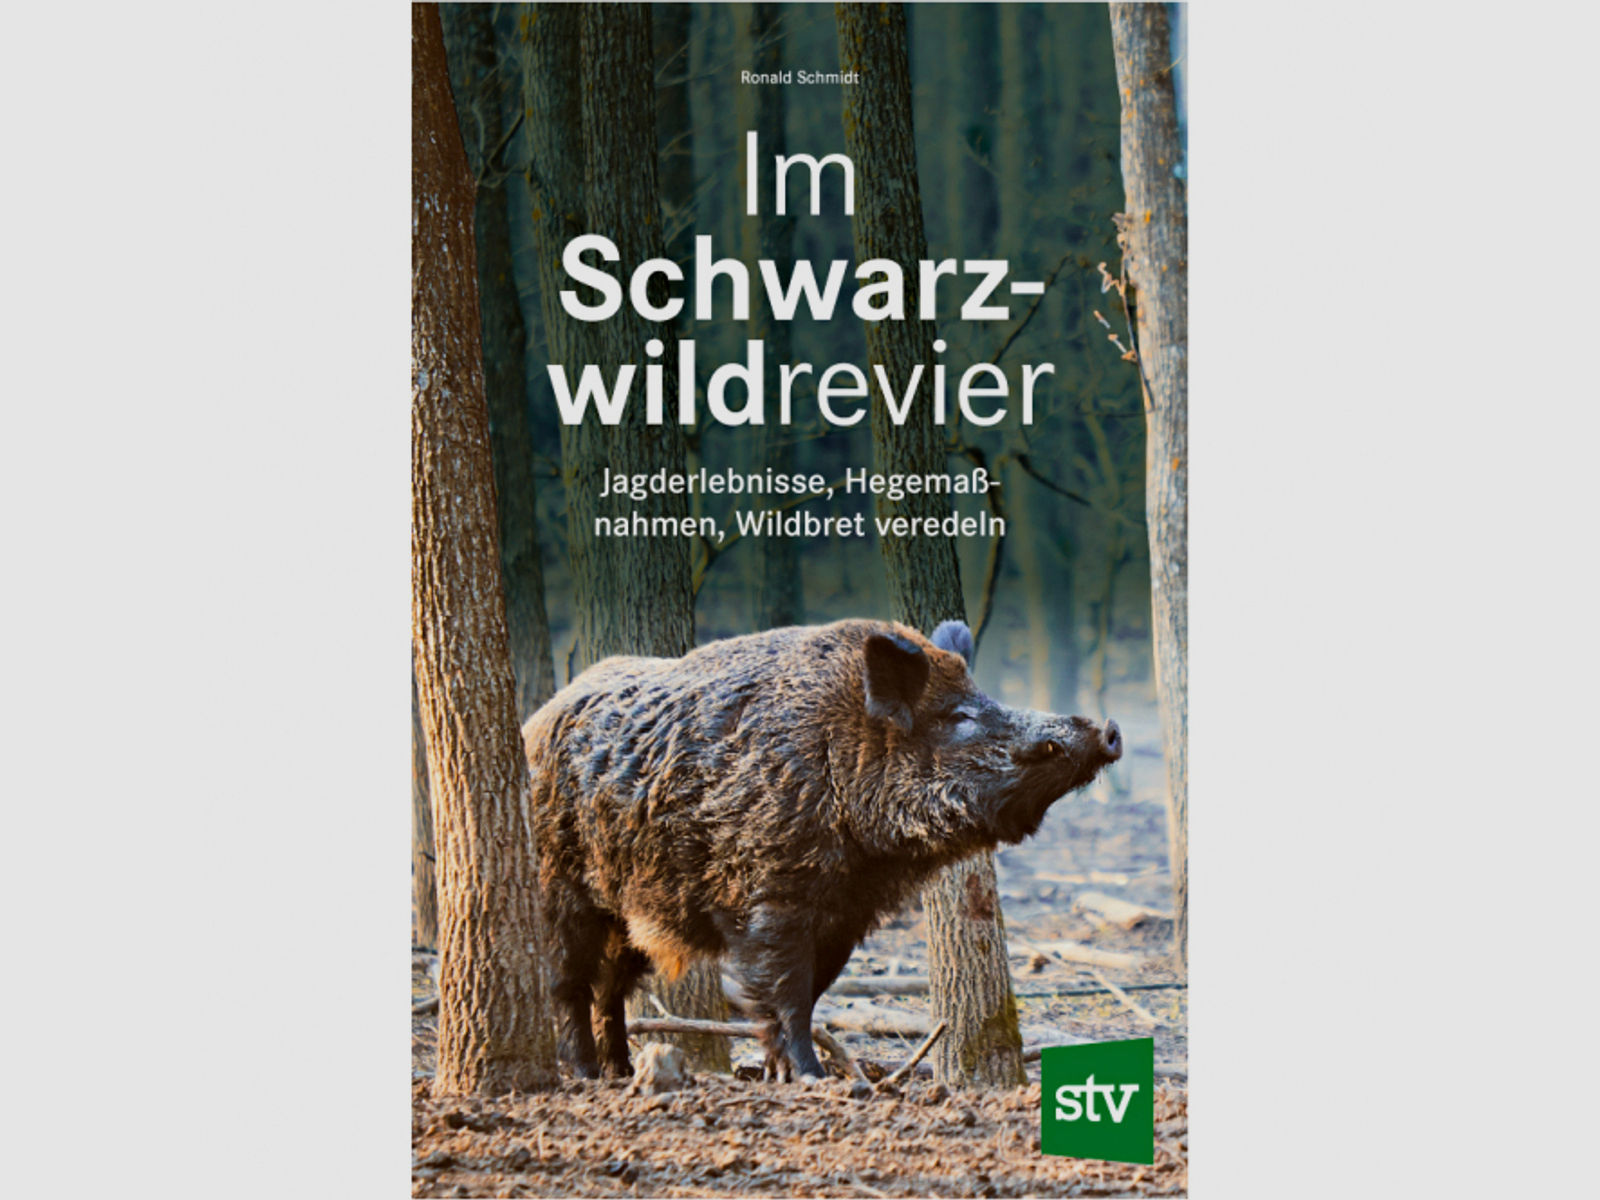 Im Schwarzwildrevier, Jagderlebnisse, Hegemaßnahmen, Wildbret veredeln von Ronald Schmidt